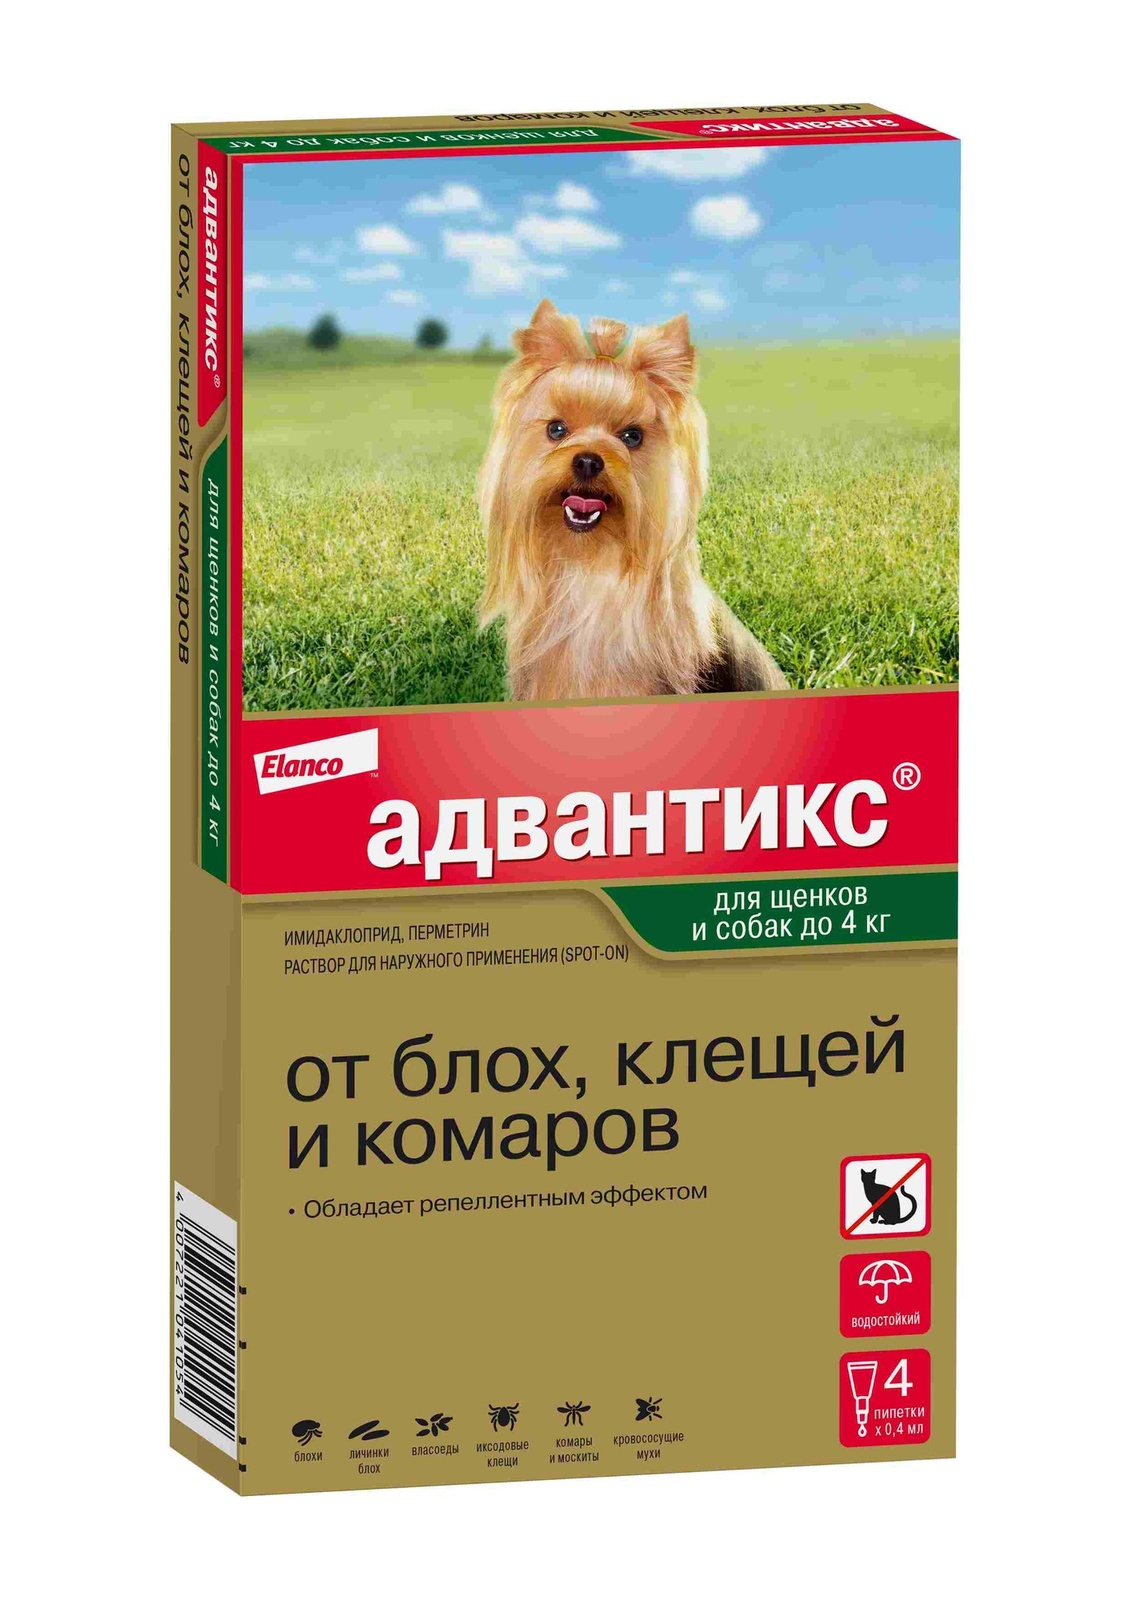 Elanco адвантикс®  для собак весом до 4 кг для защиты от блох, иксодовых клещей и летающих насекомых и переносимых ими заболеваний. 4 пипетки в упаковке (10 г) - фото 1